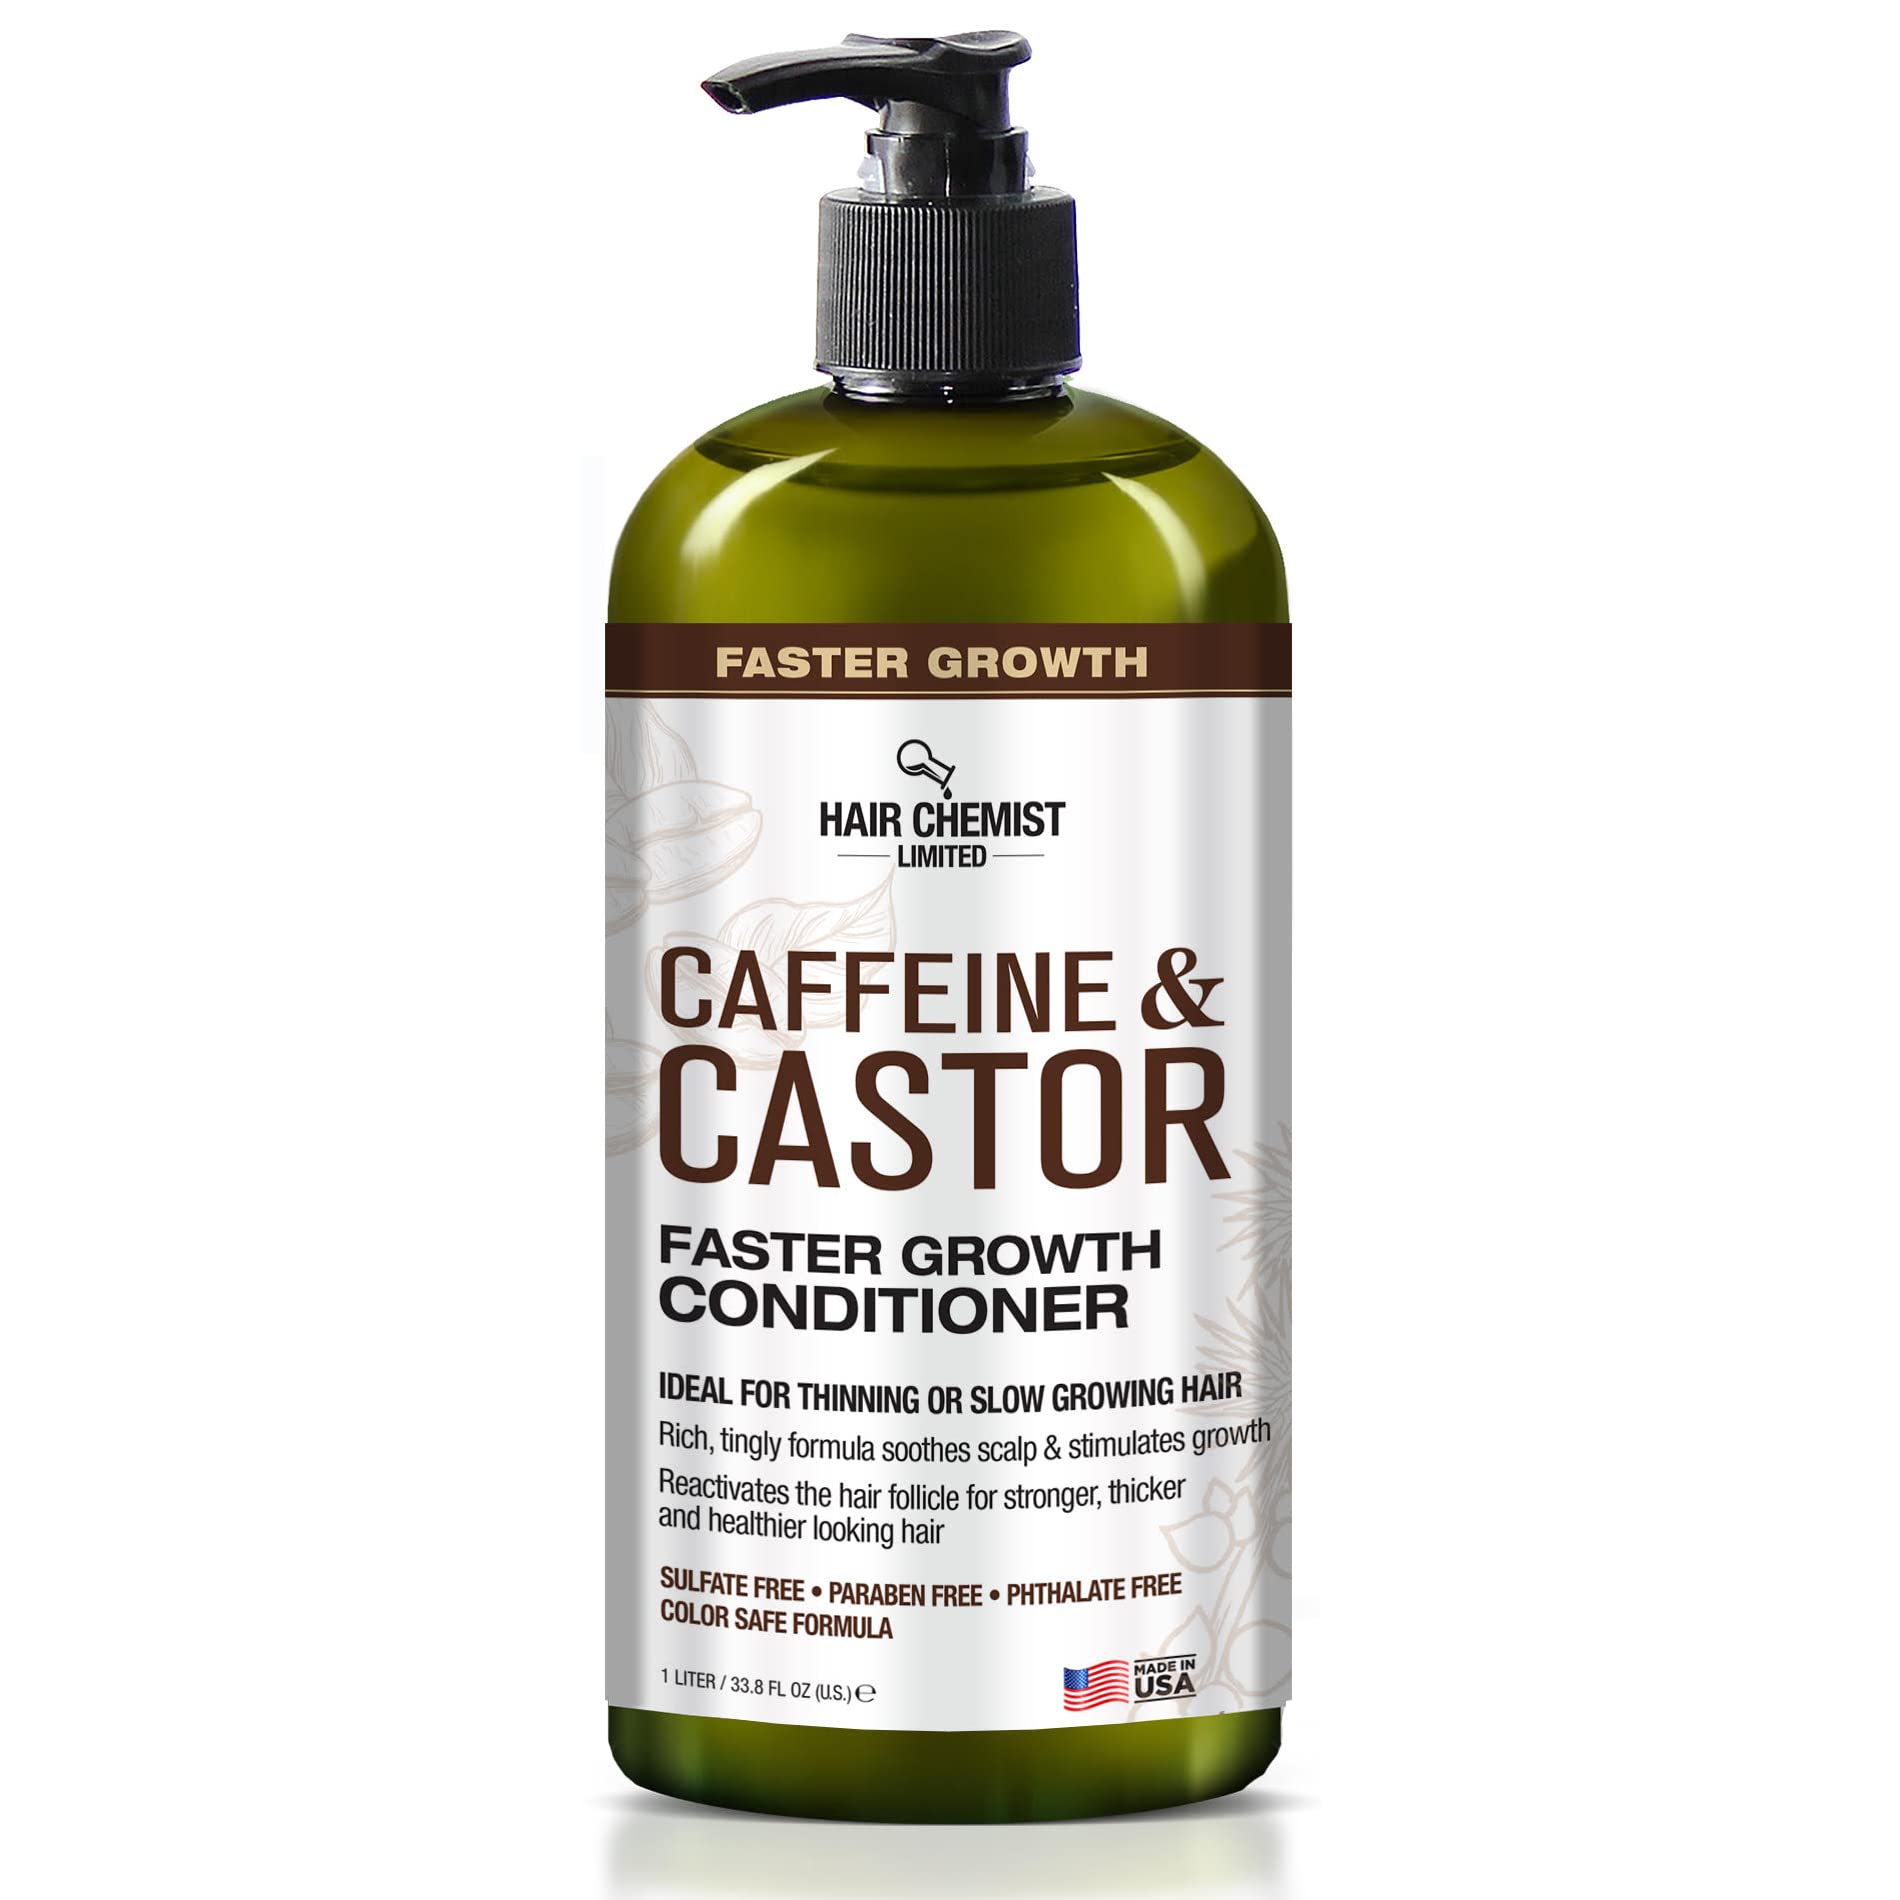 Hair Chemist Caffeine and Castor Faster Growth Conditioner 33.8 oz. - Hair Conditioner for Faster Hair Growth